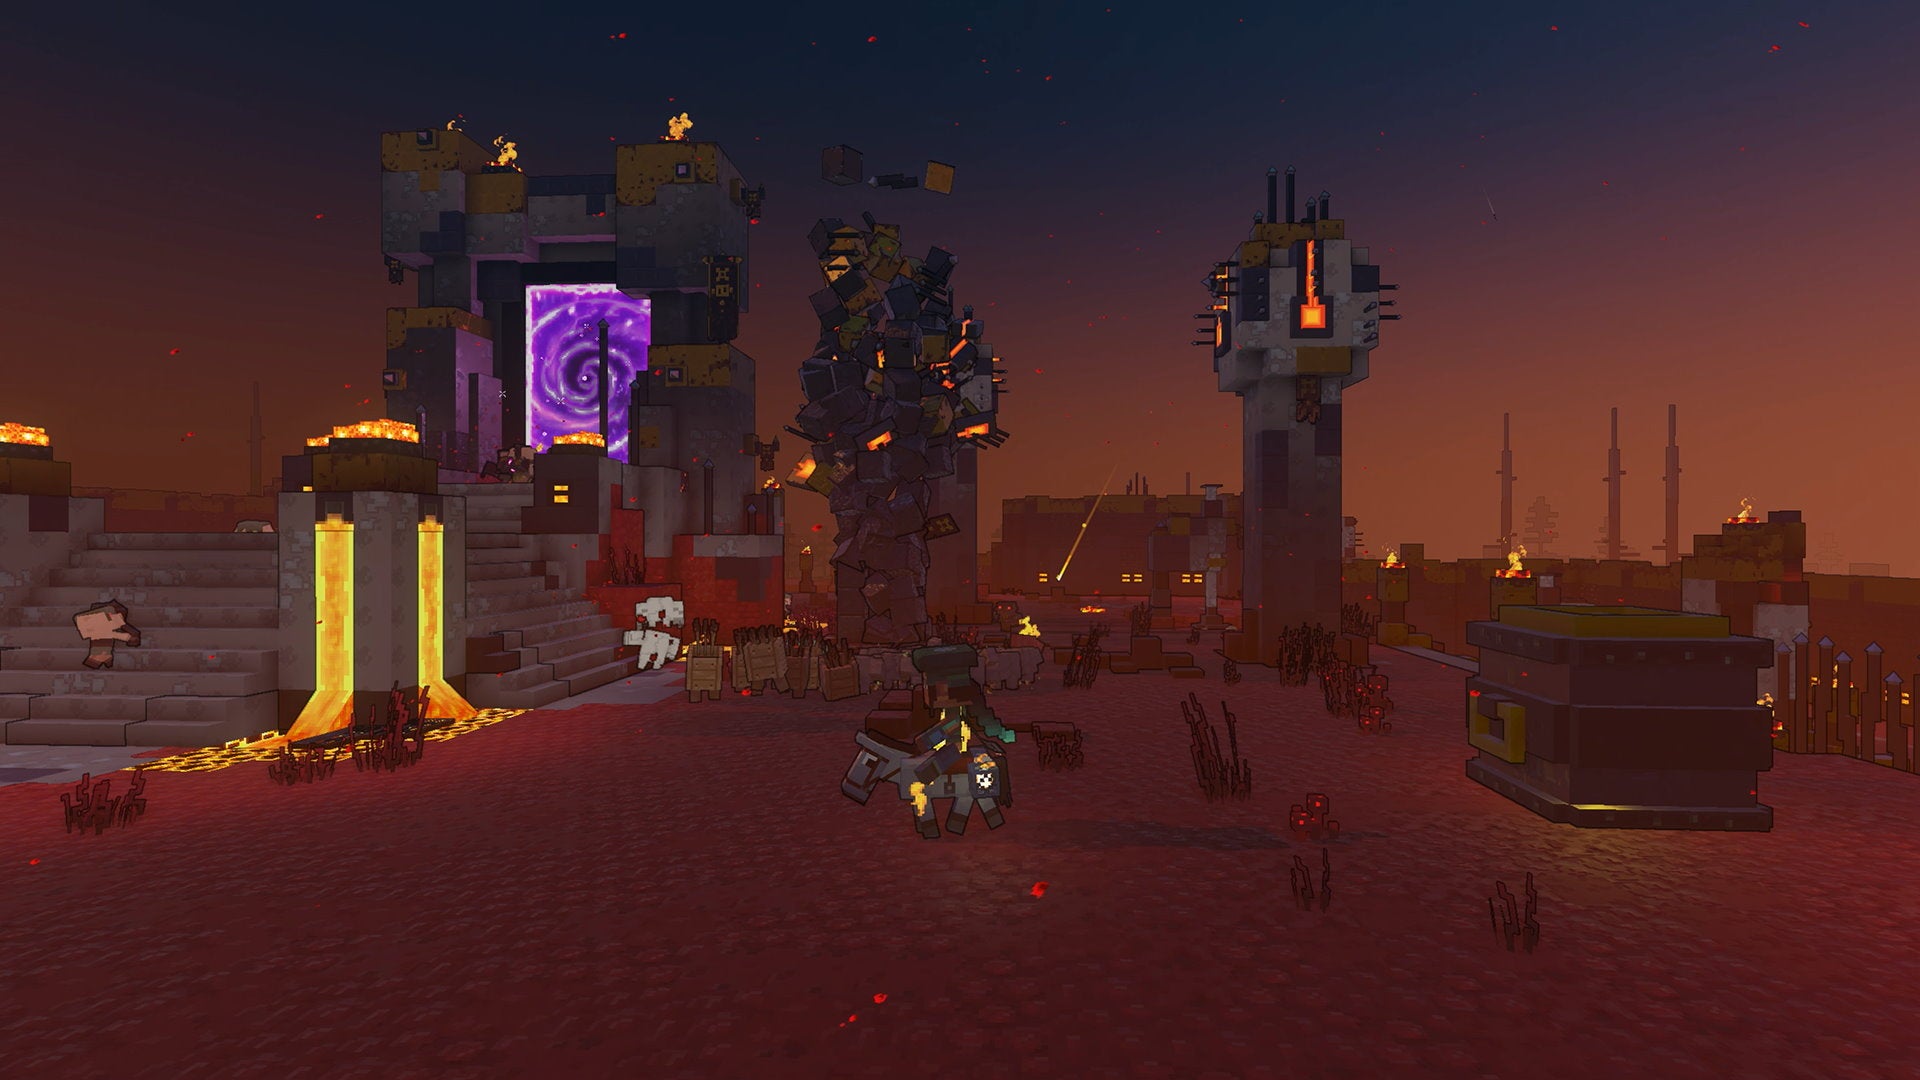 A warrior on horseback rides through a twilight battleground in Minecraft Legends